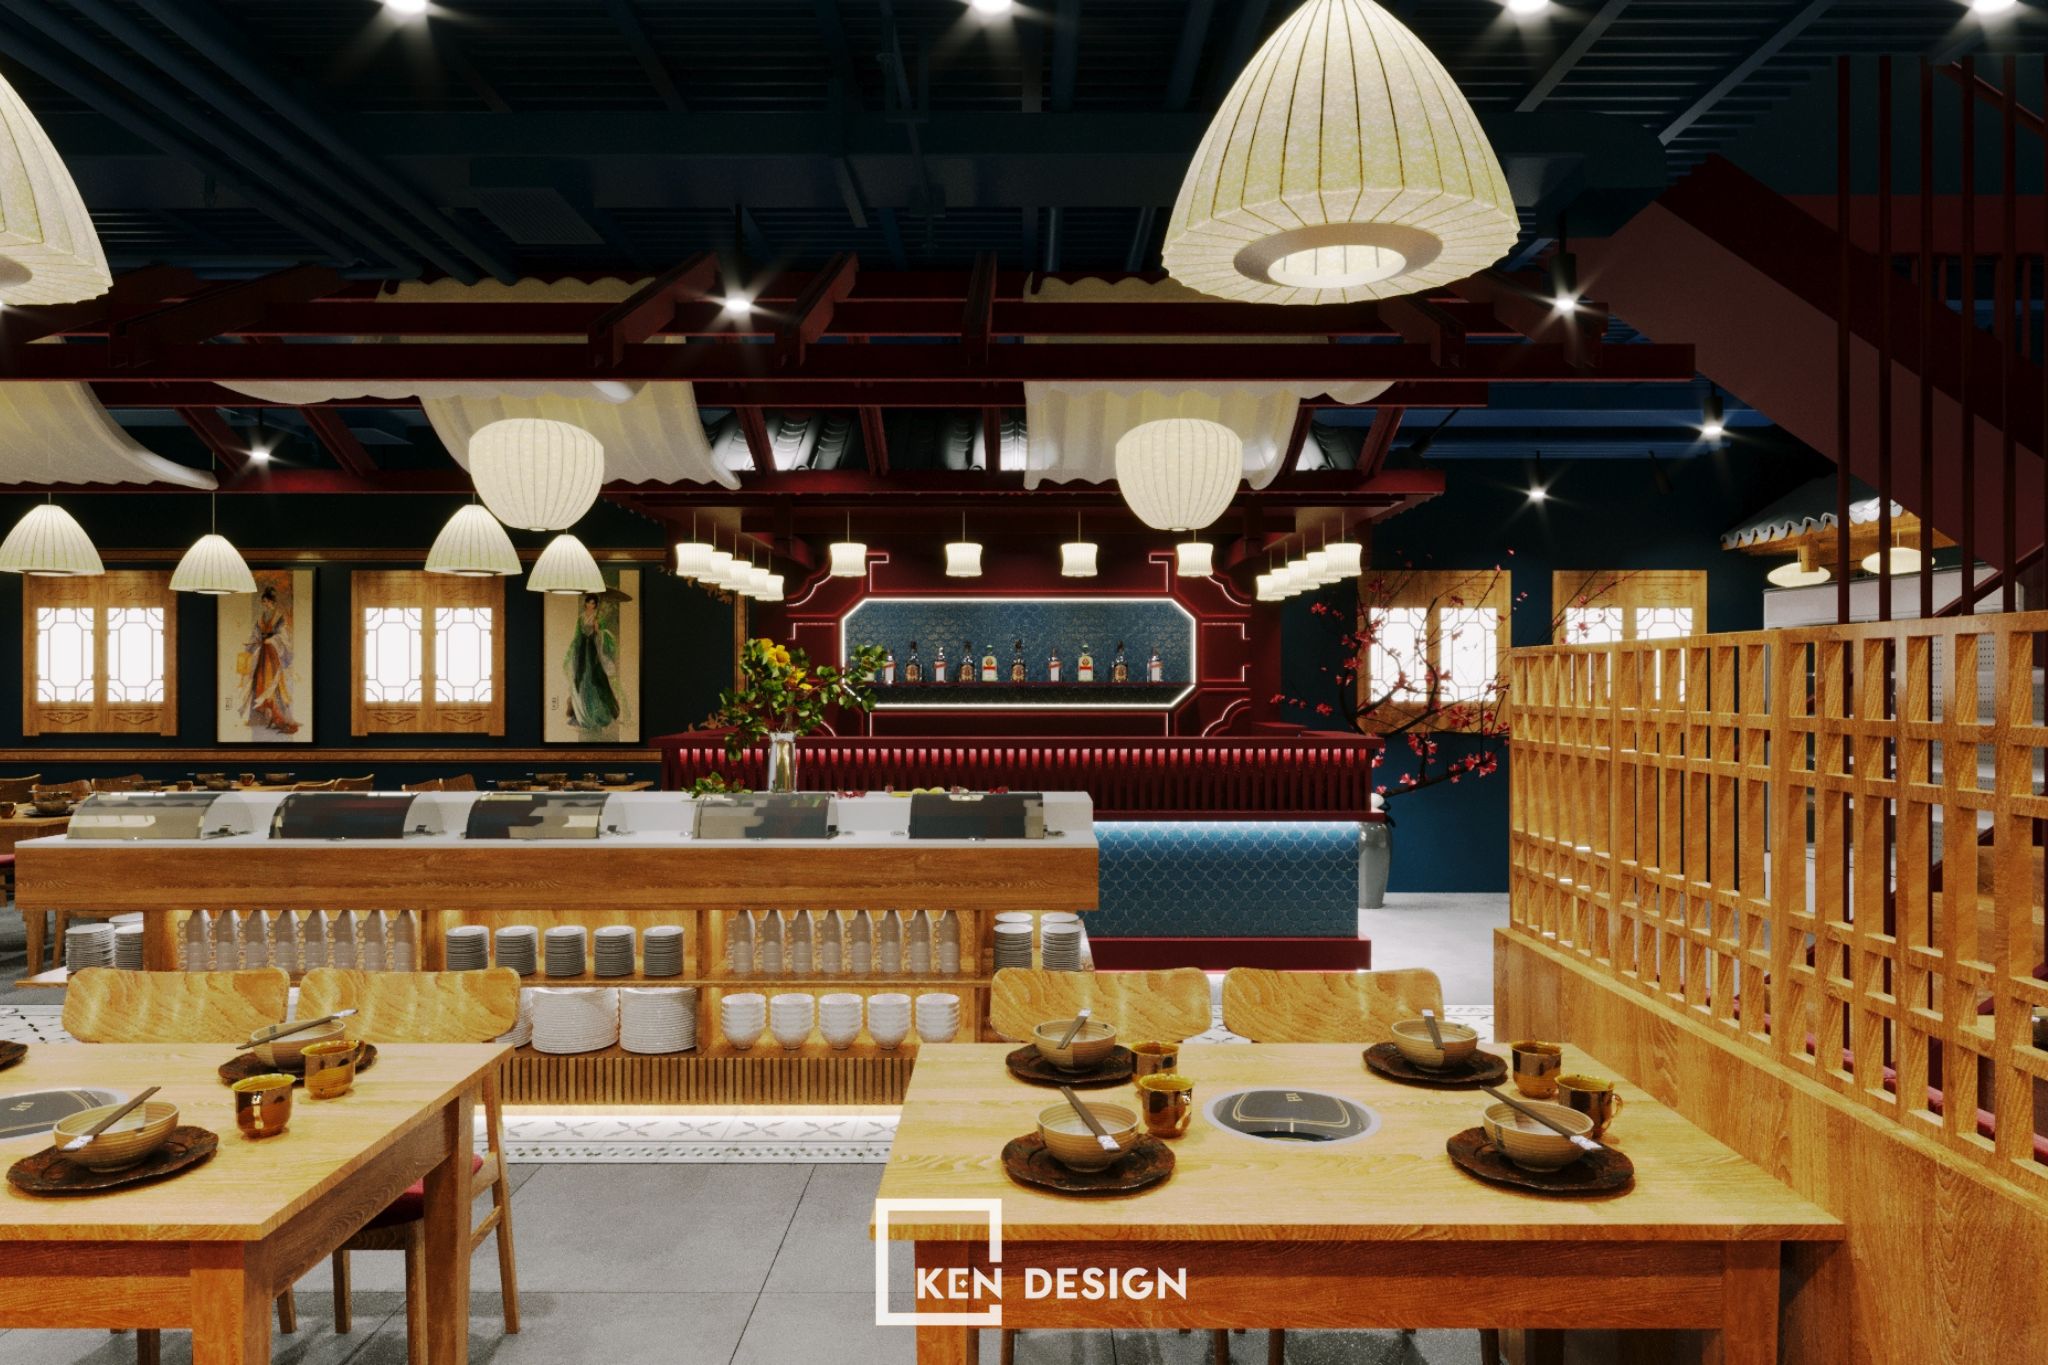 Trang trí thiết kế nhà hàng Chuan Yue Shi Kong 